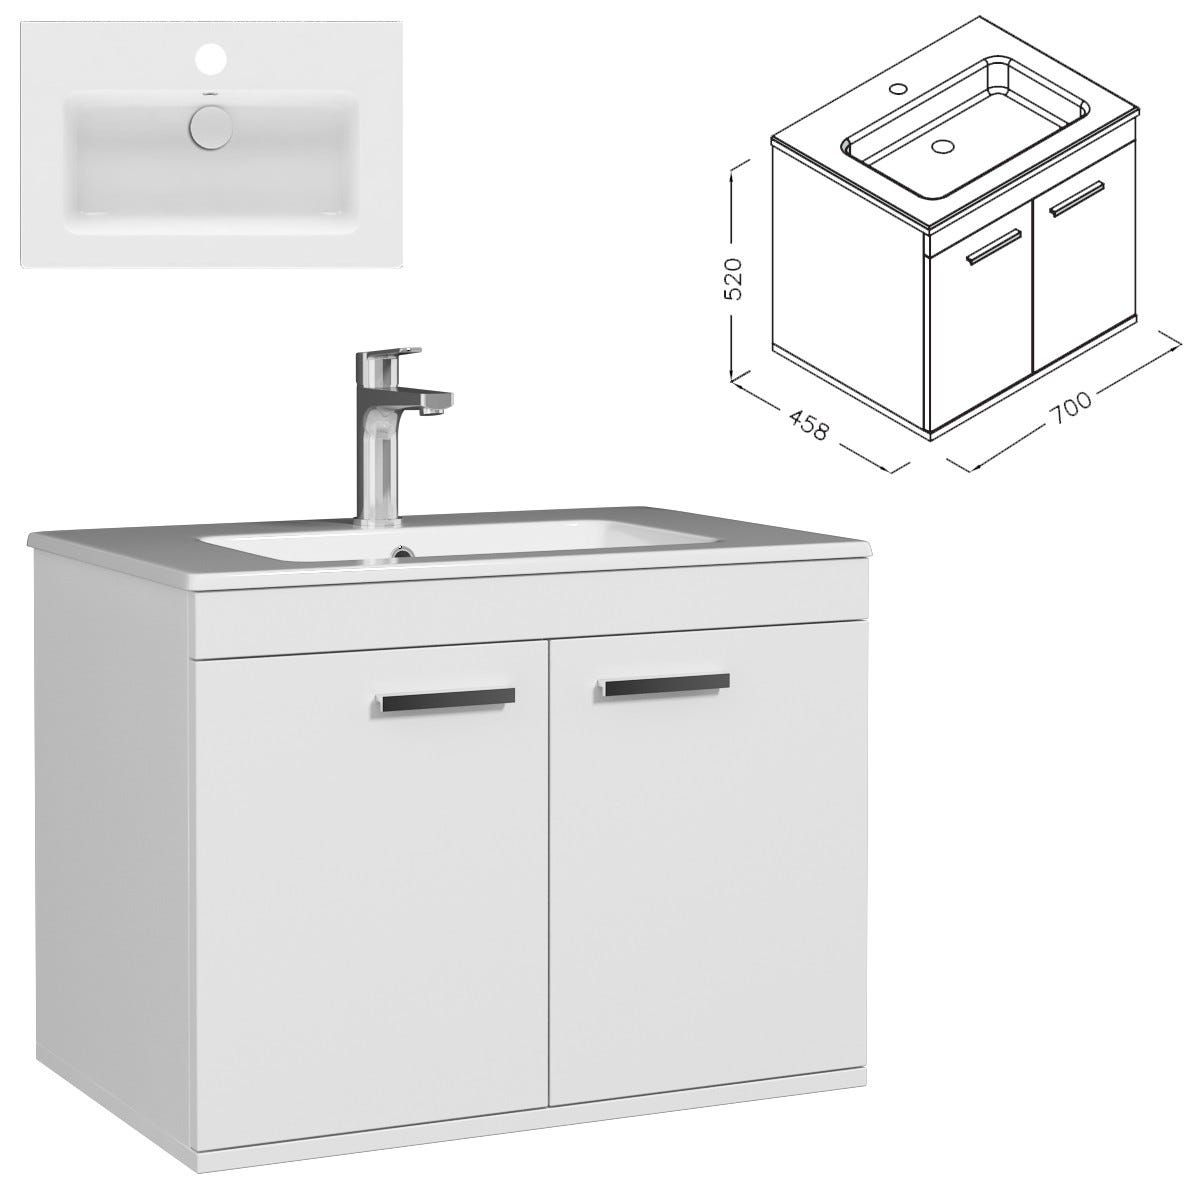 RUBITE Meuble salle de bain simple vasque 2 portes blanc largeur 70 cm 2